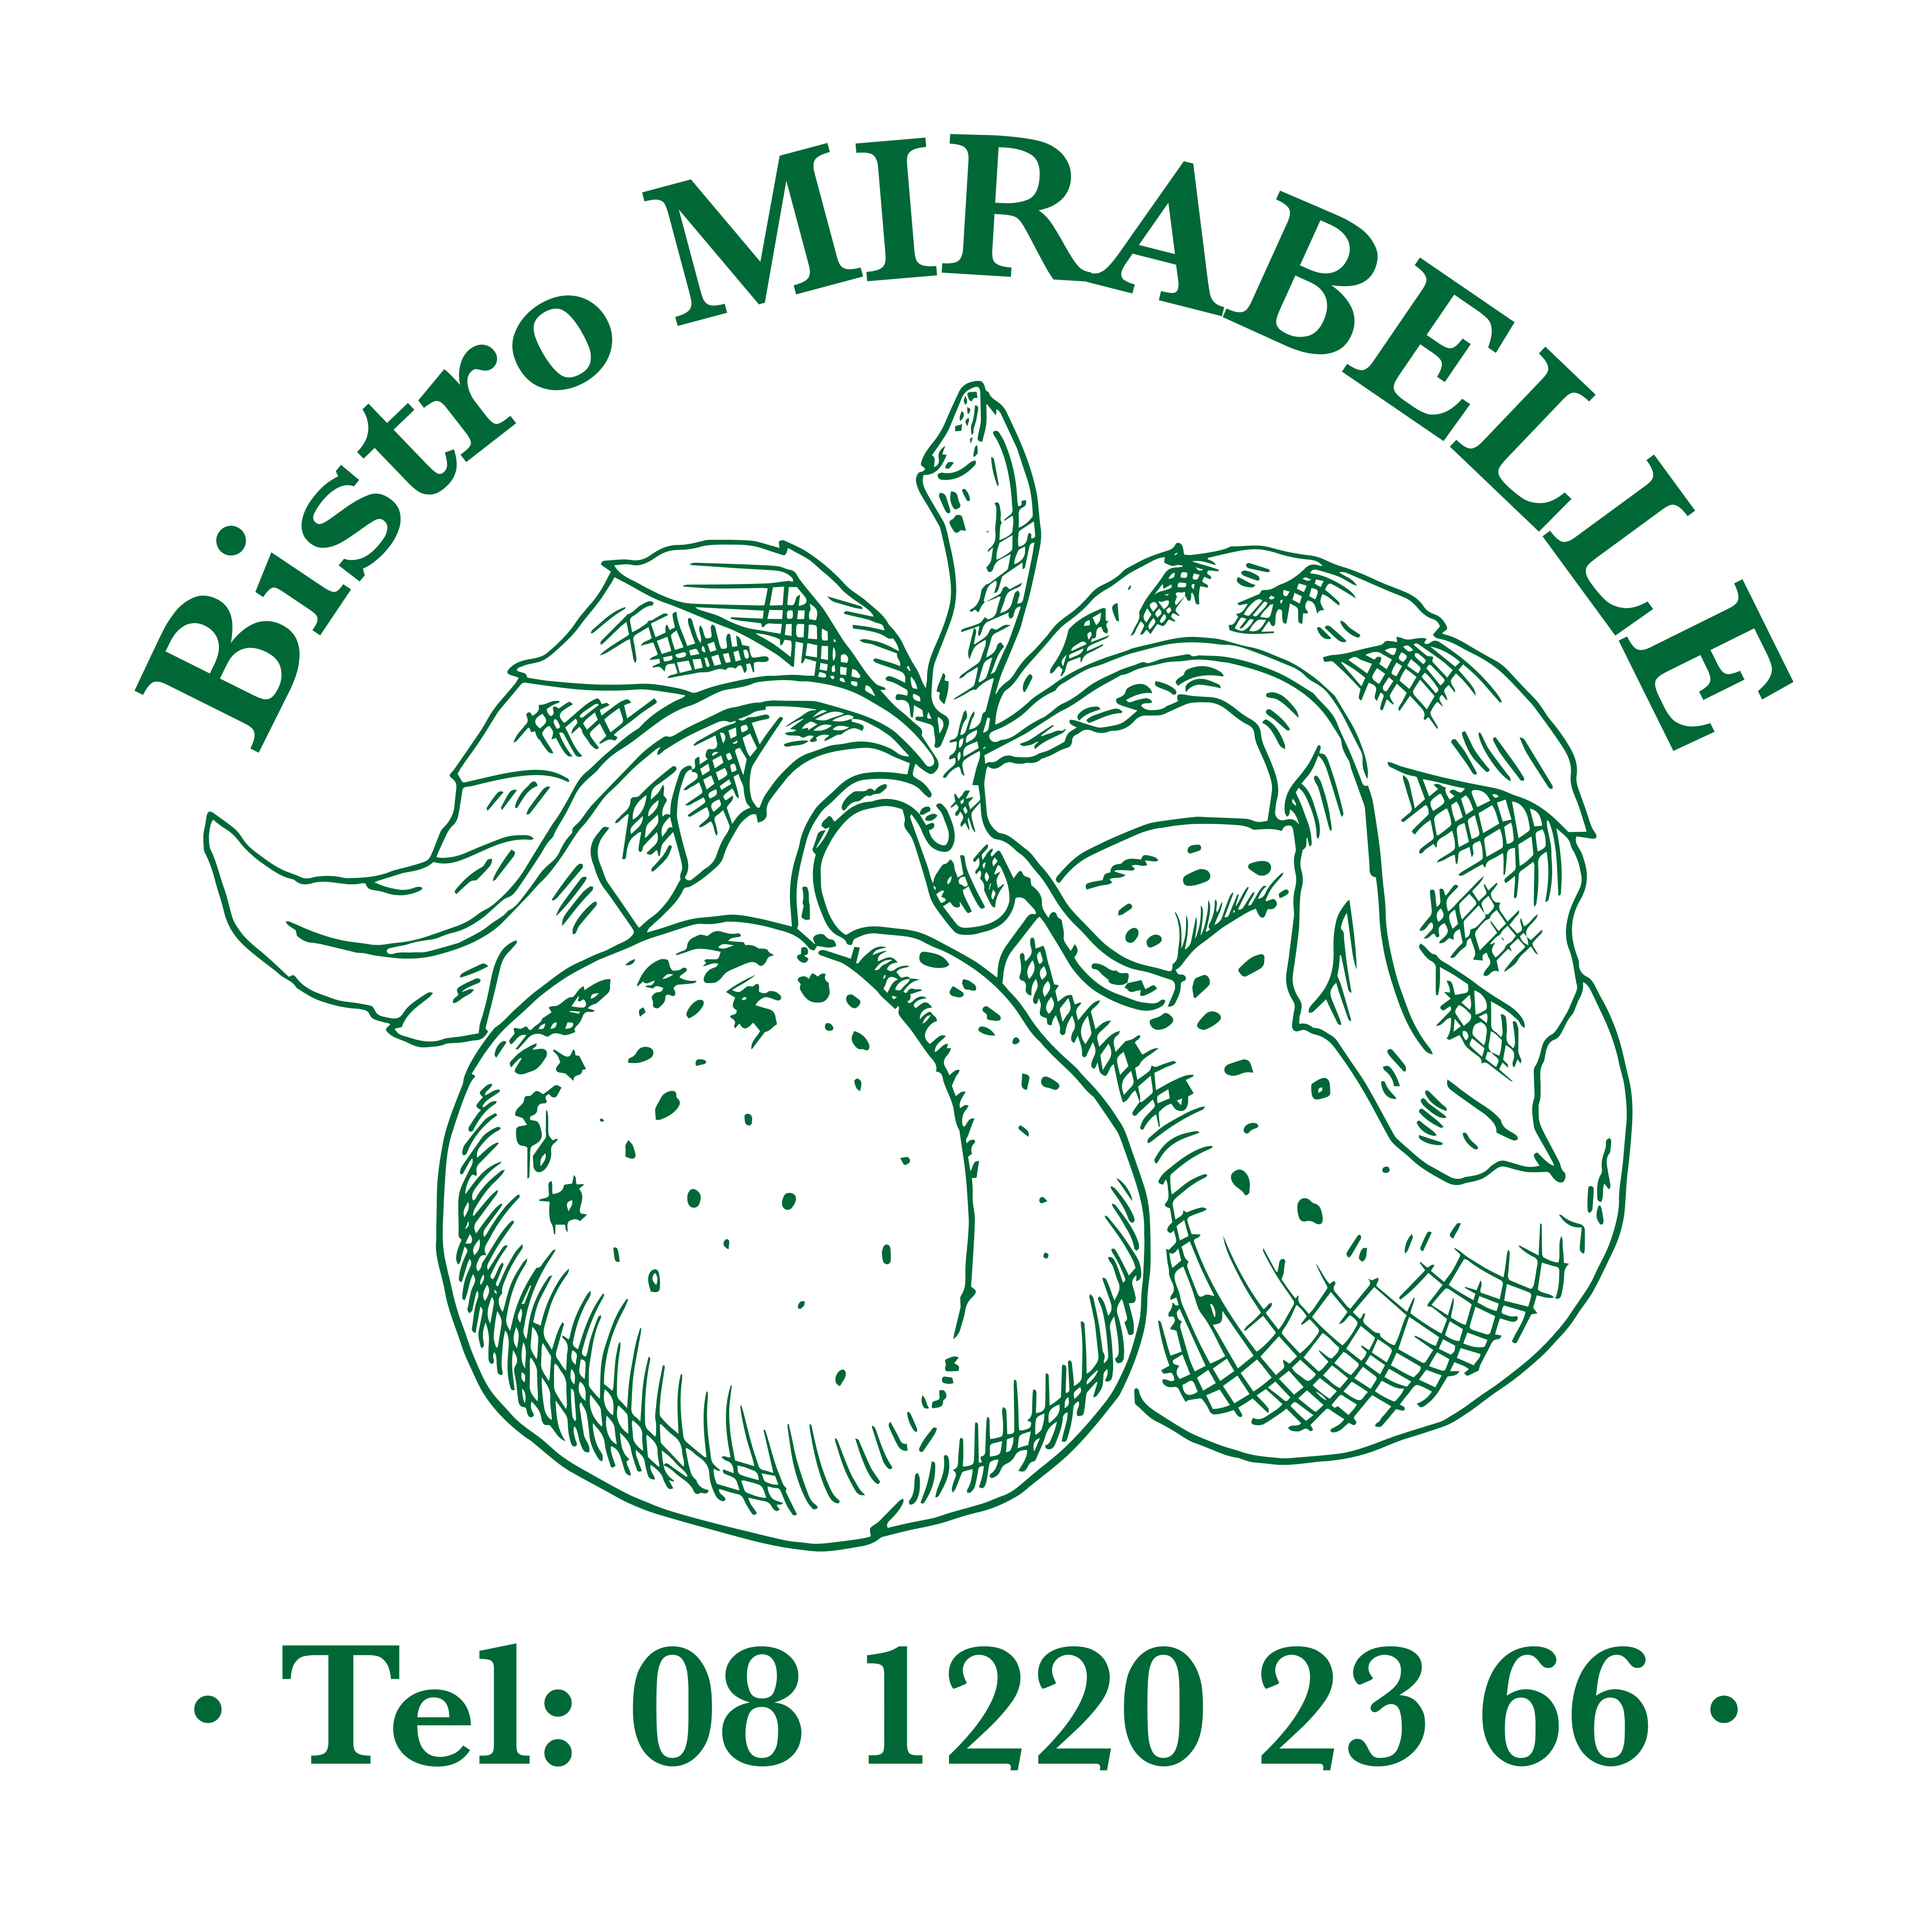 Bistro Mirabelle